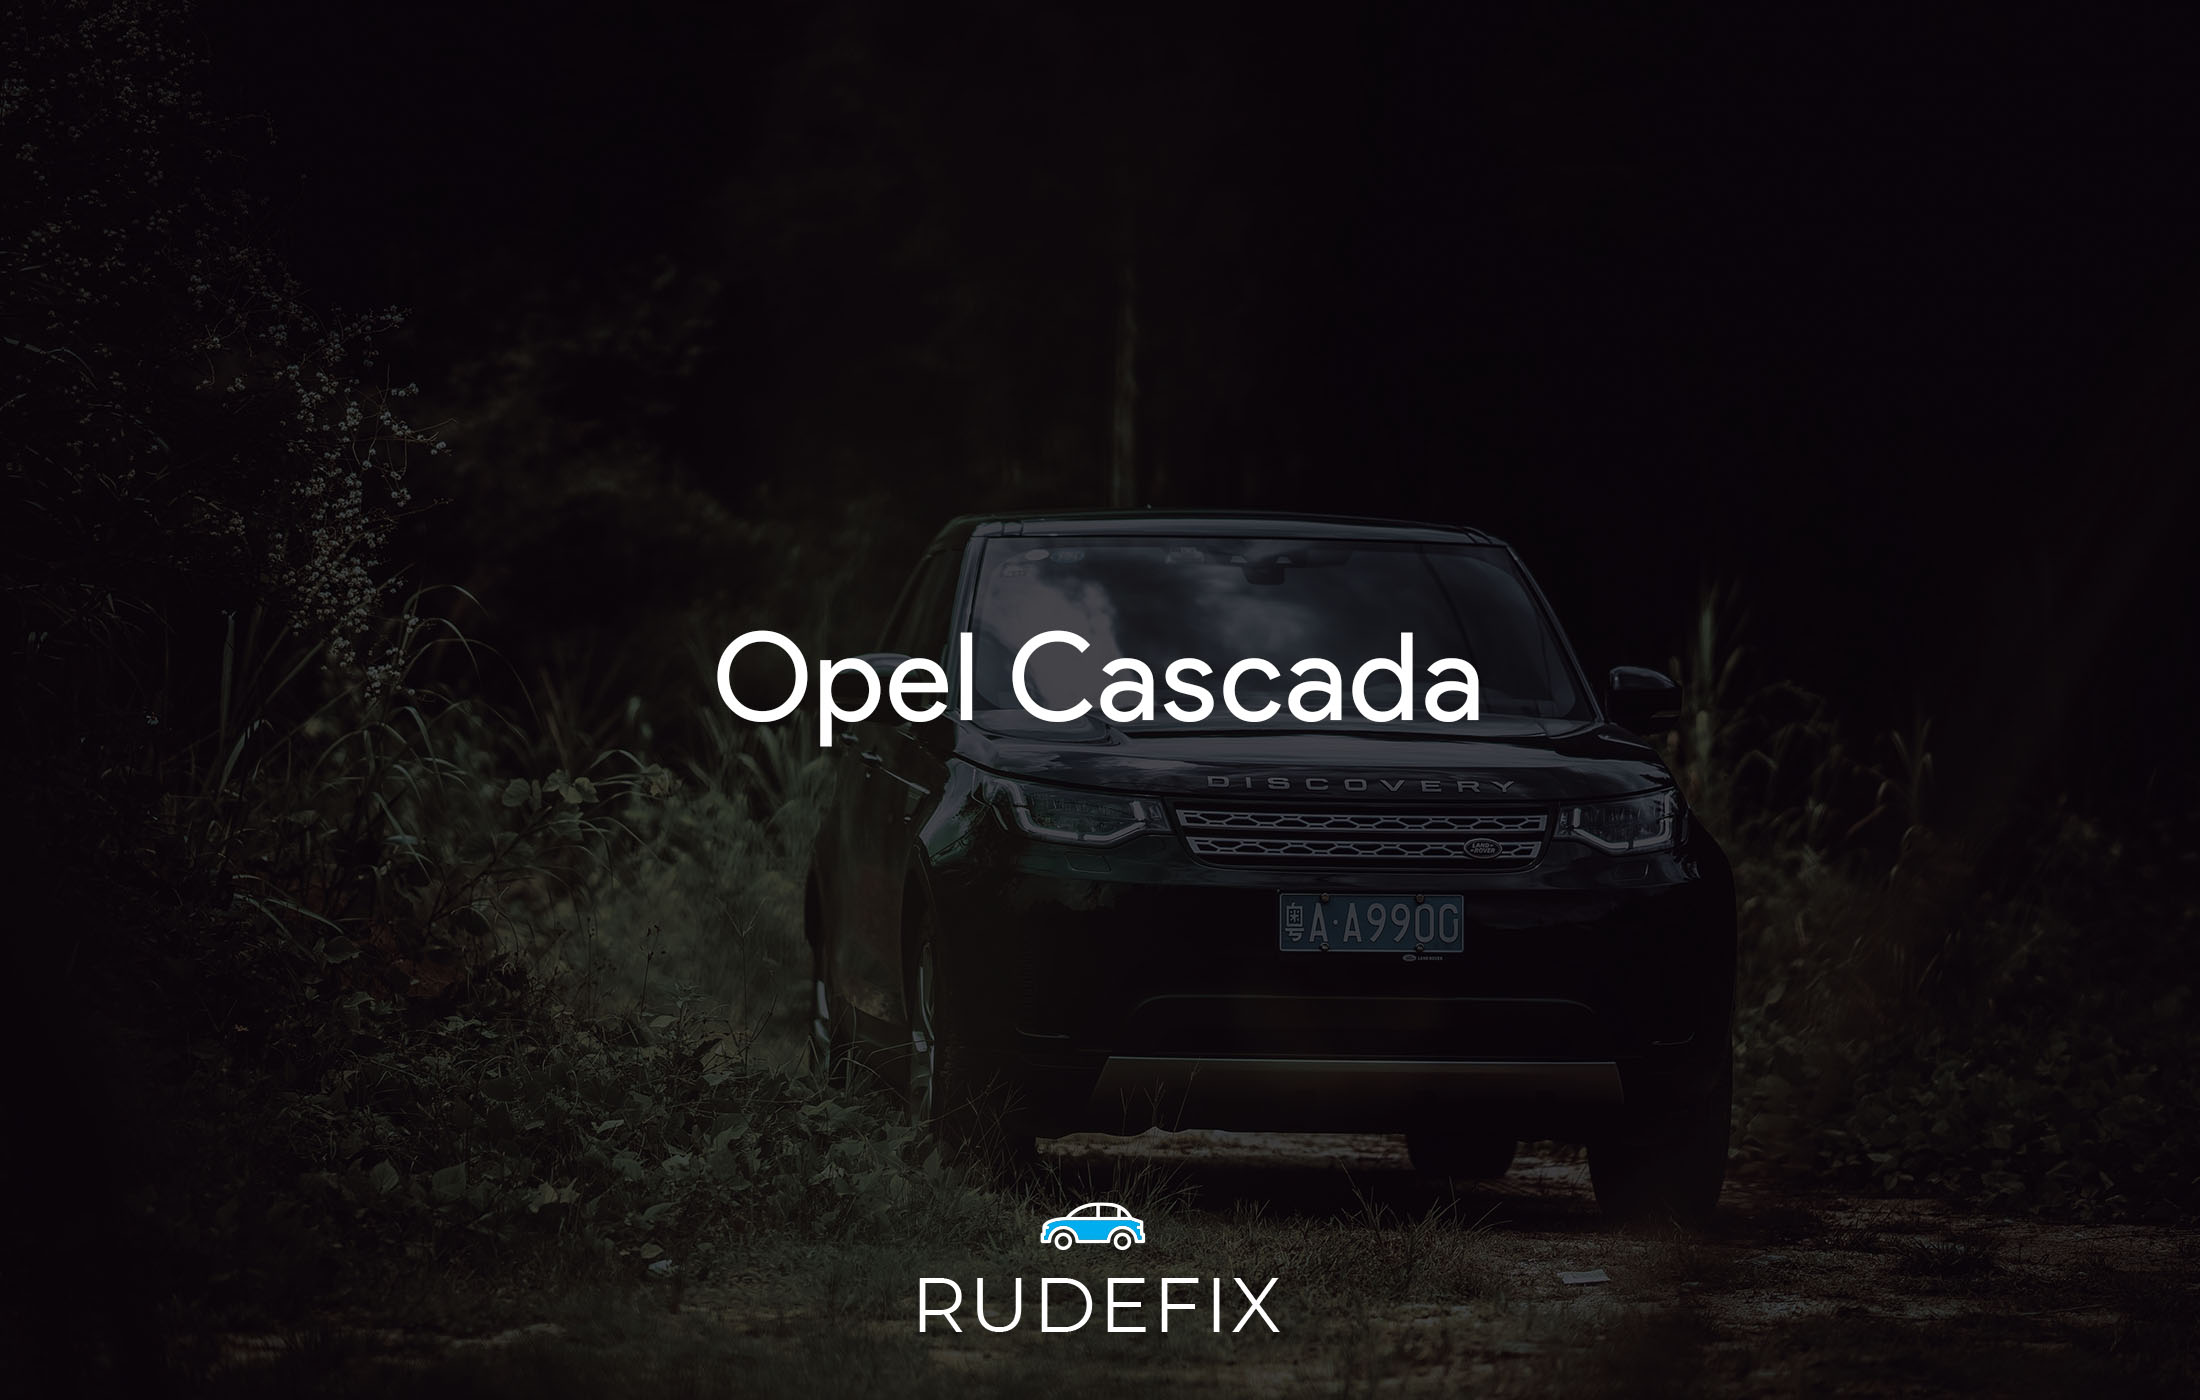 Opel Cascada - forrude information